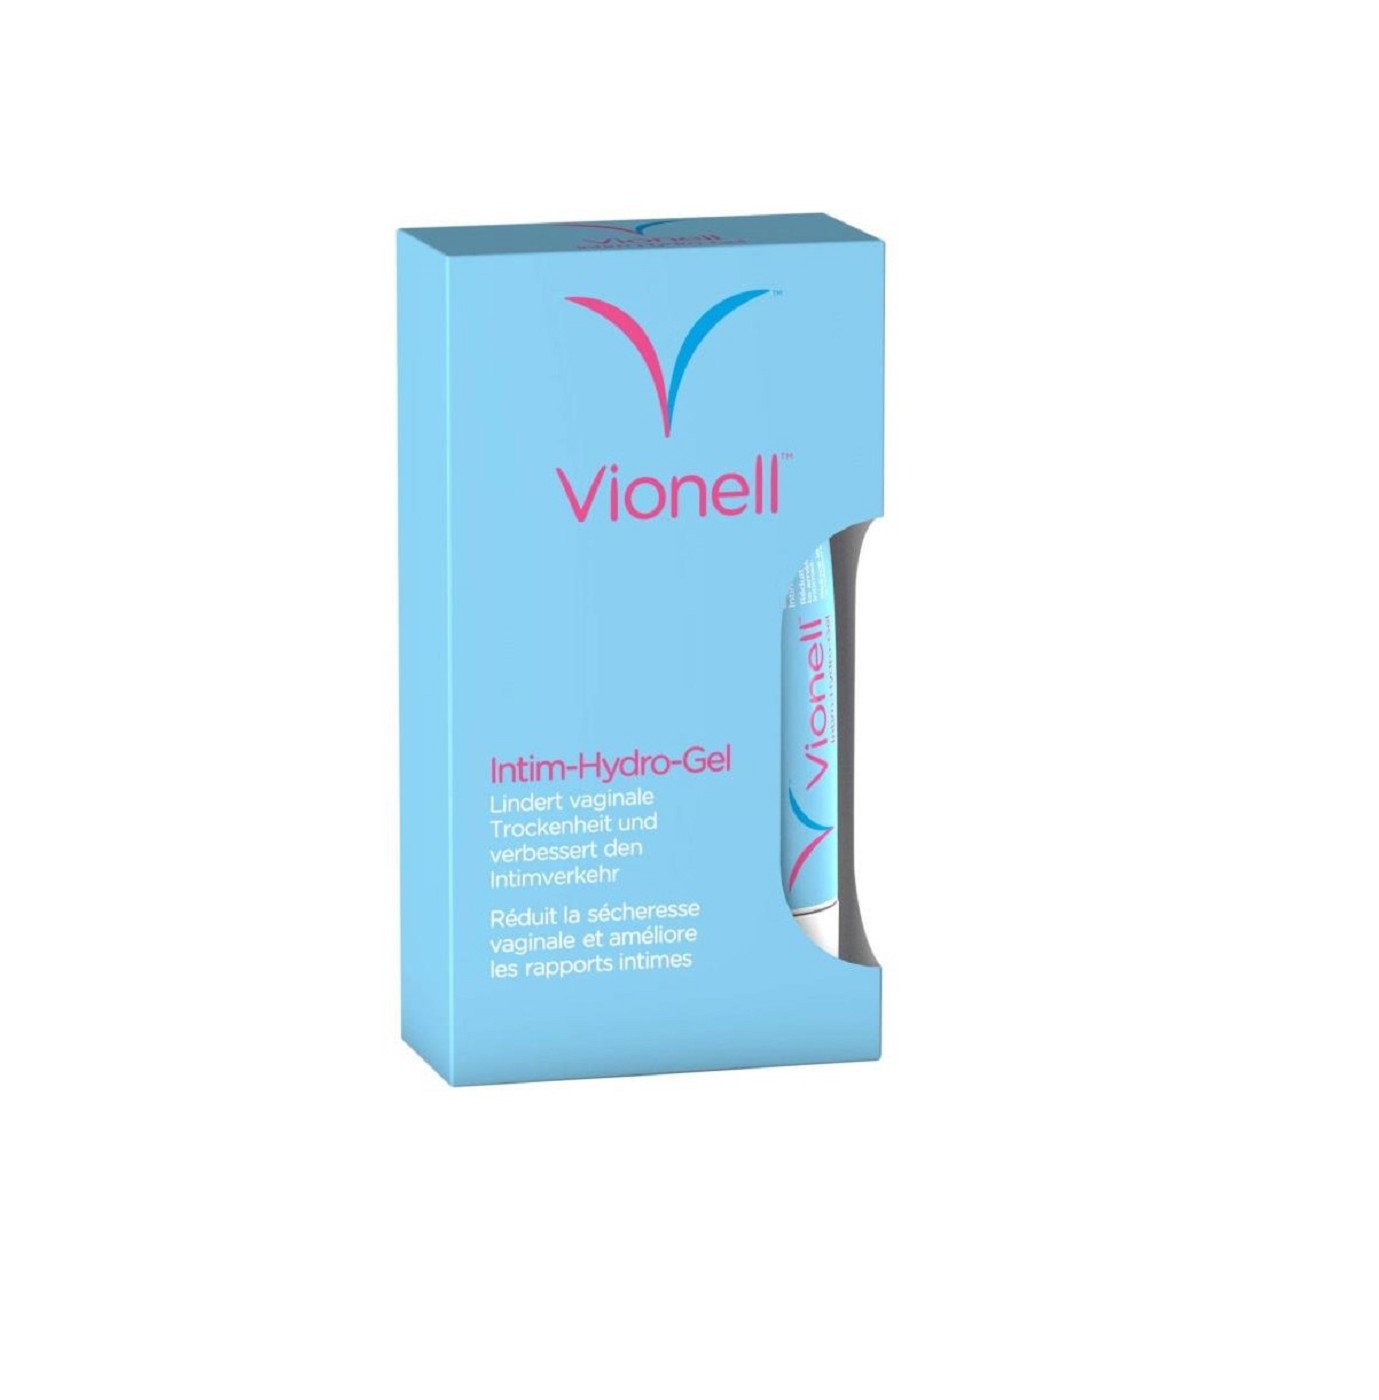 Vionell Intim-Hydro-Gel - 30ml - Intimhygiene bei der Frau